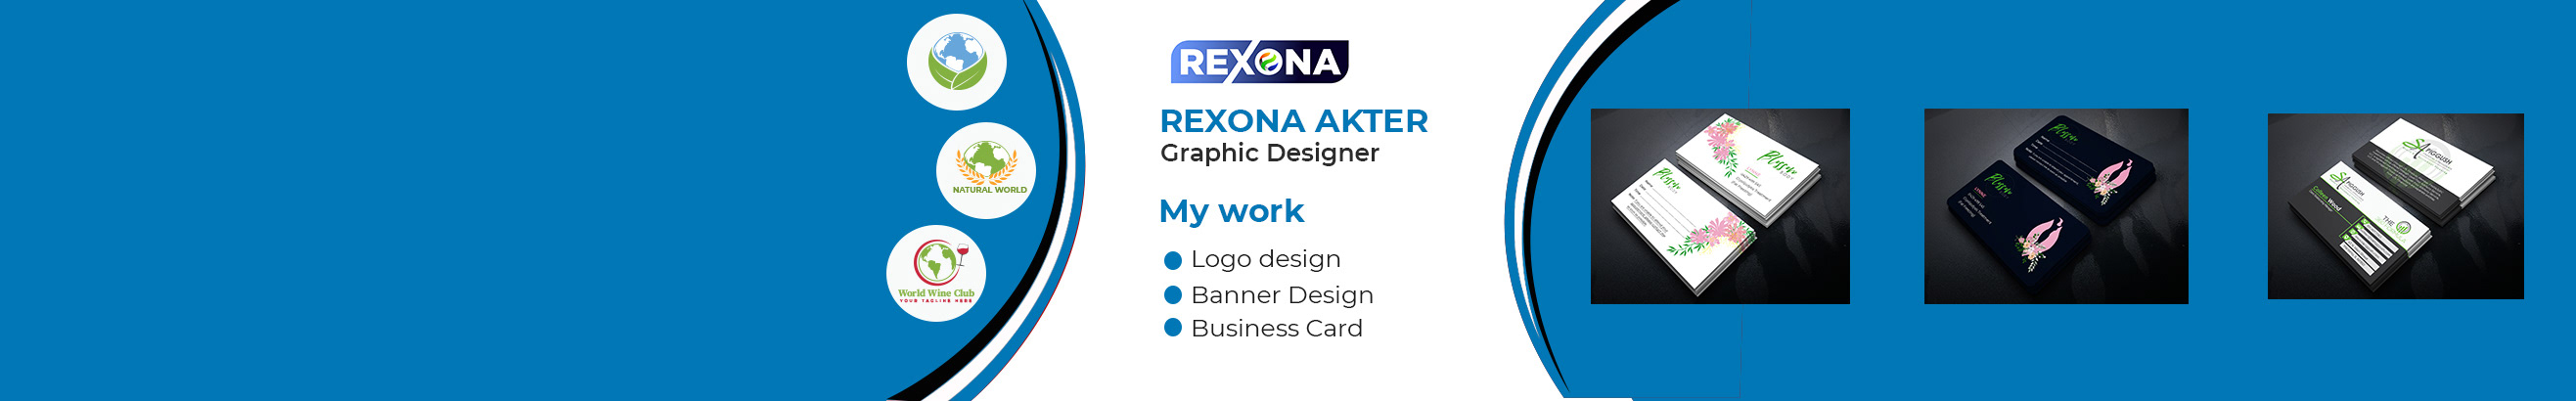 Profil-Banner von Rexona Akter